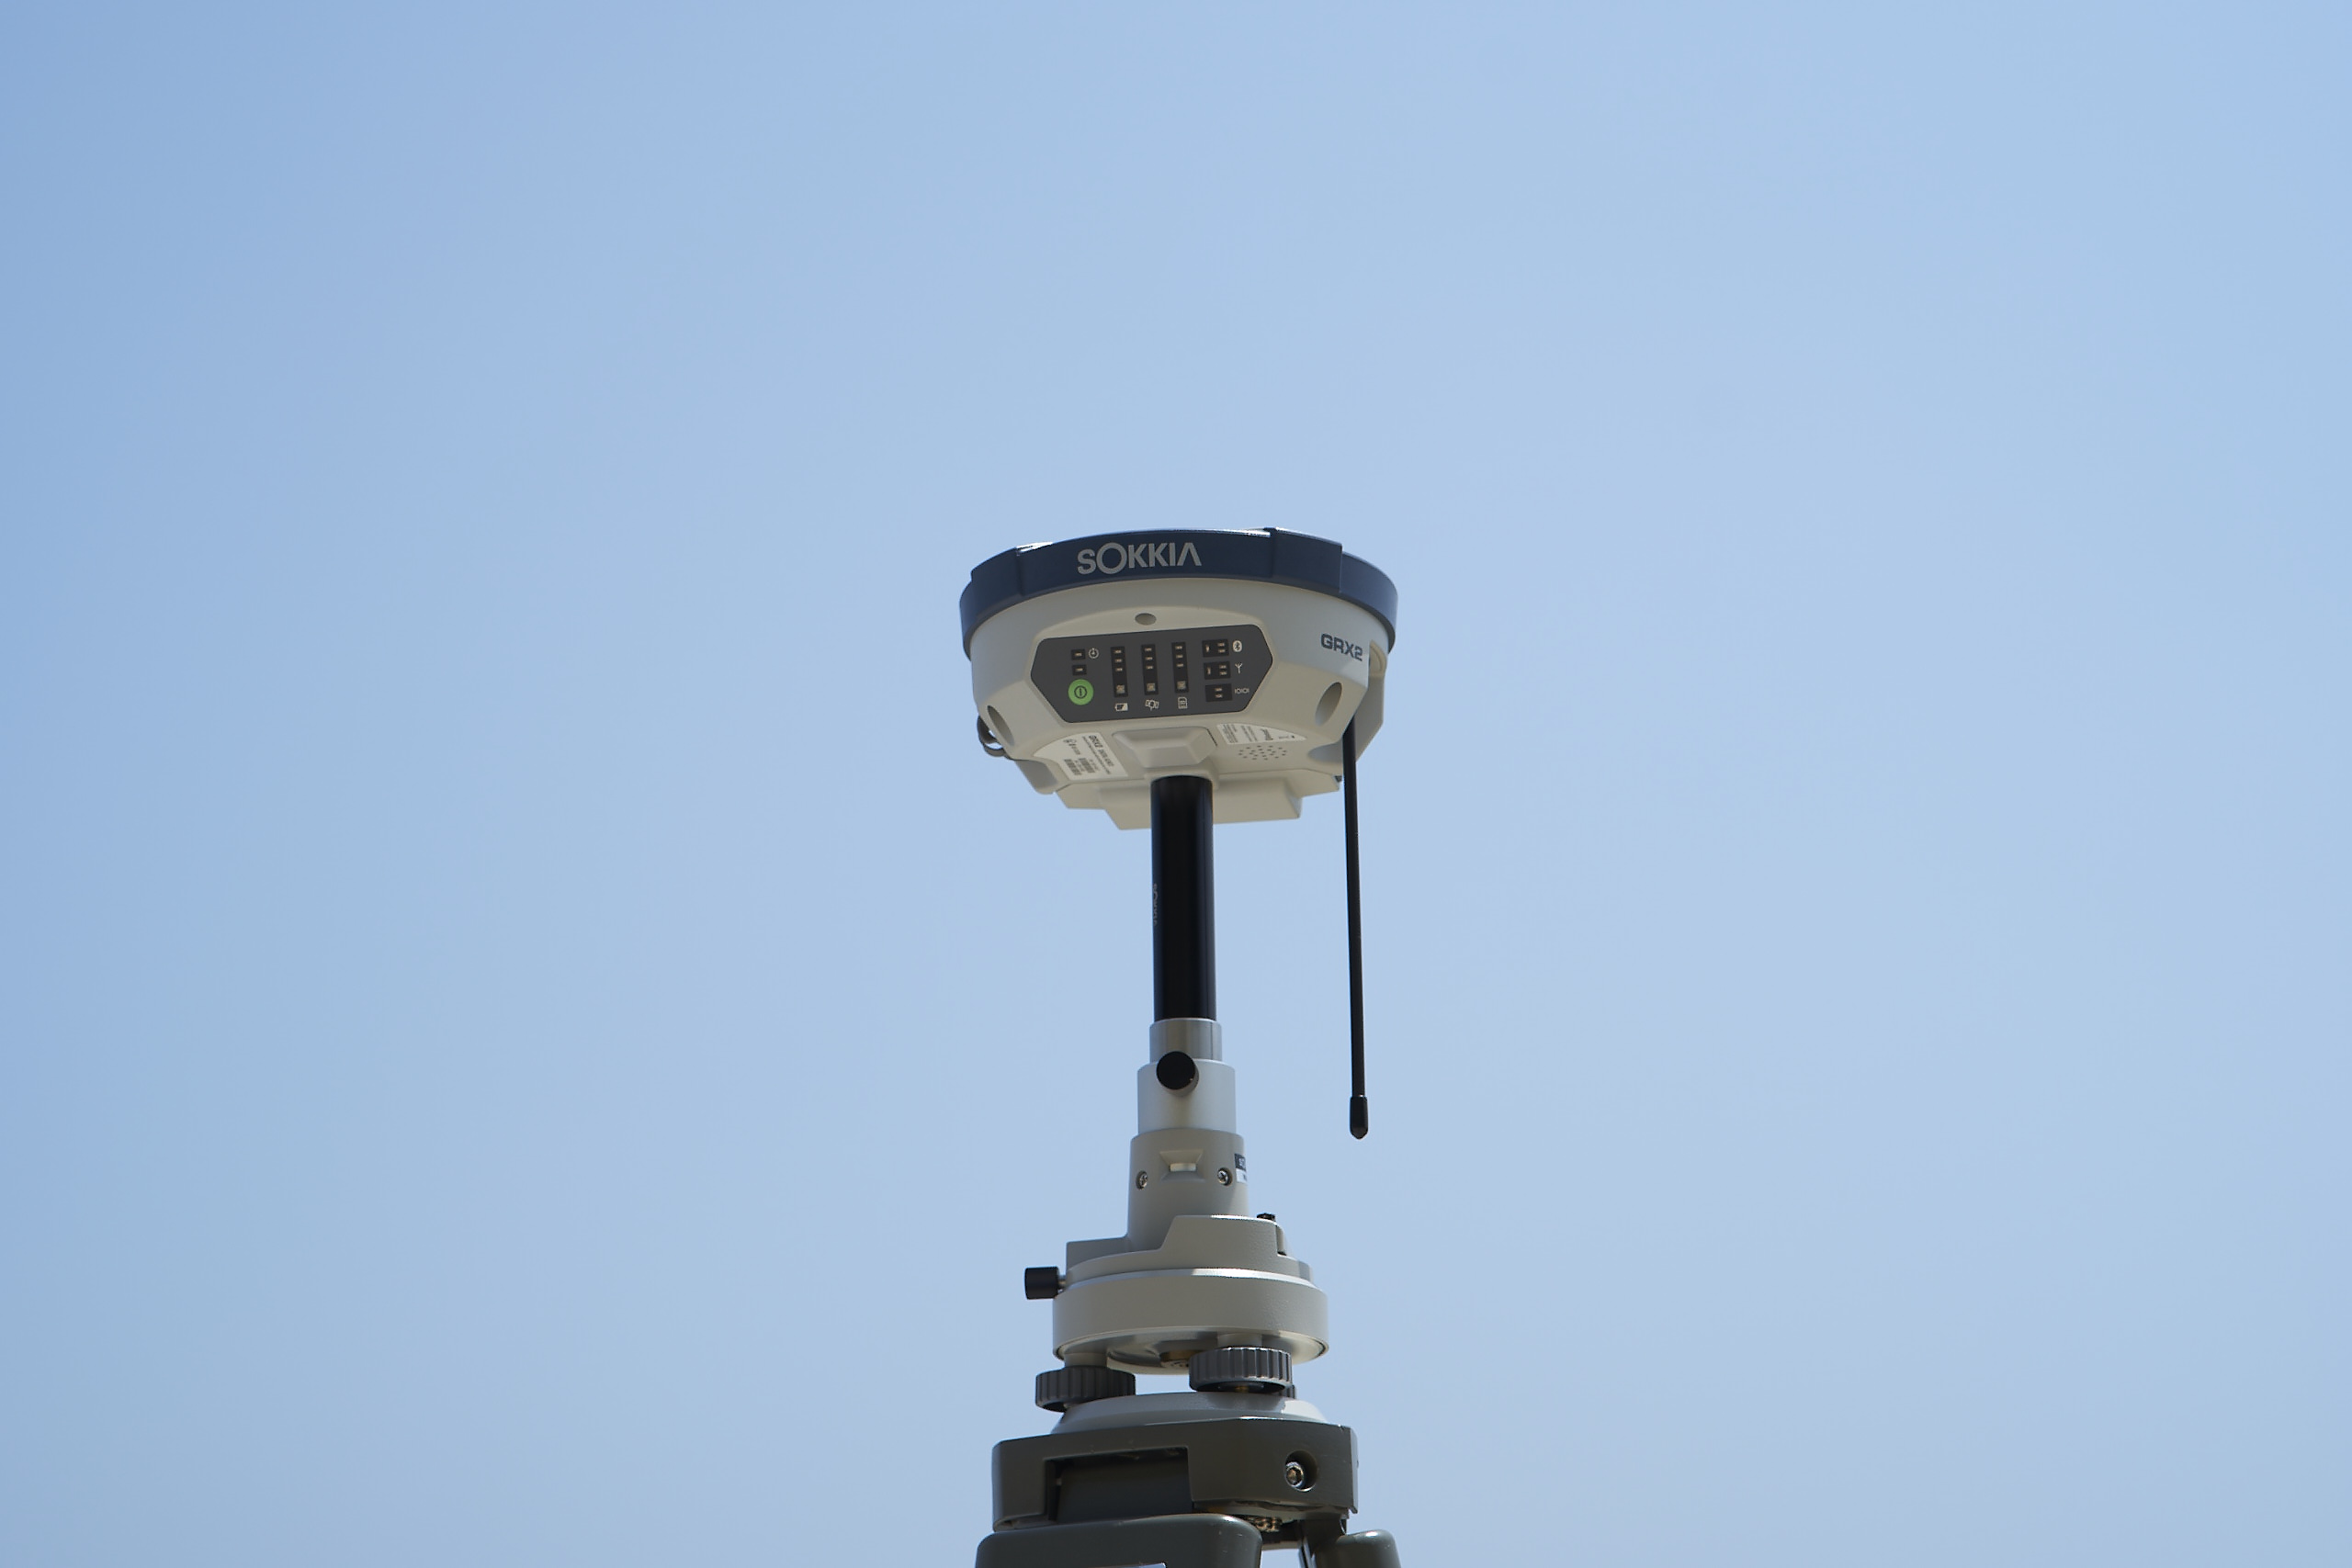 GNSS測量